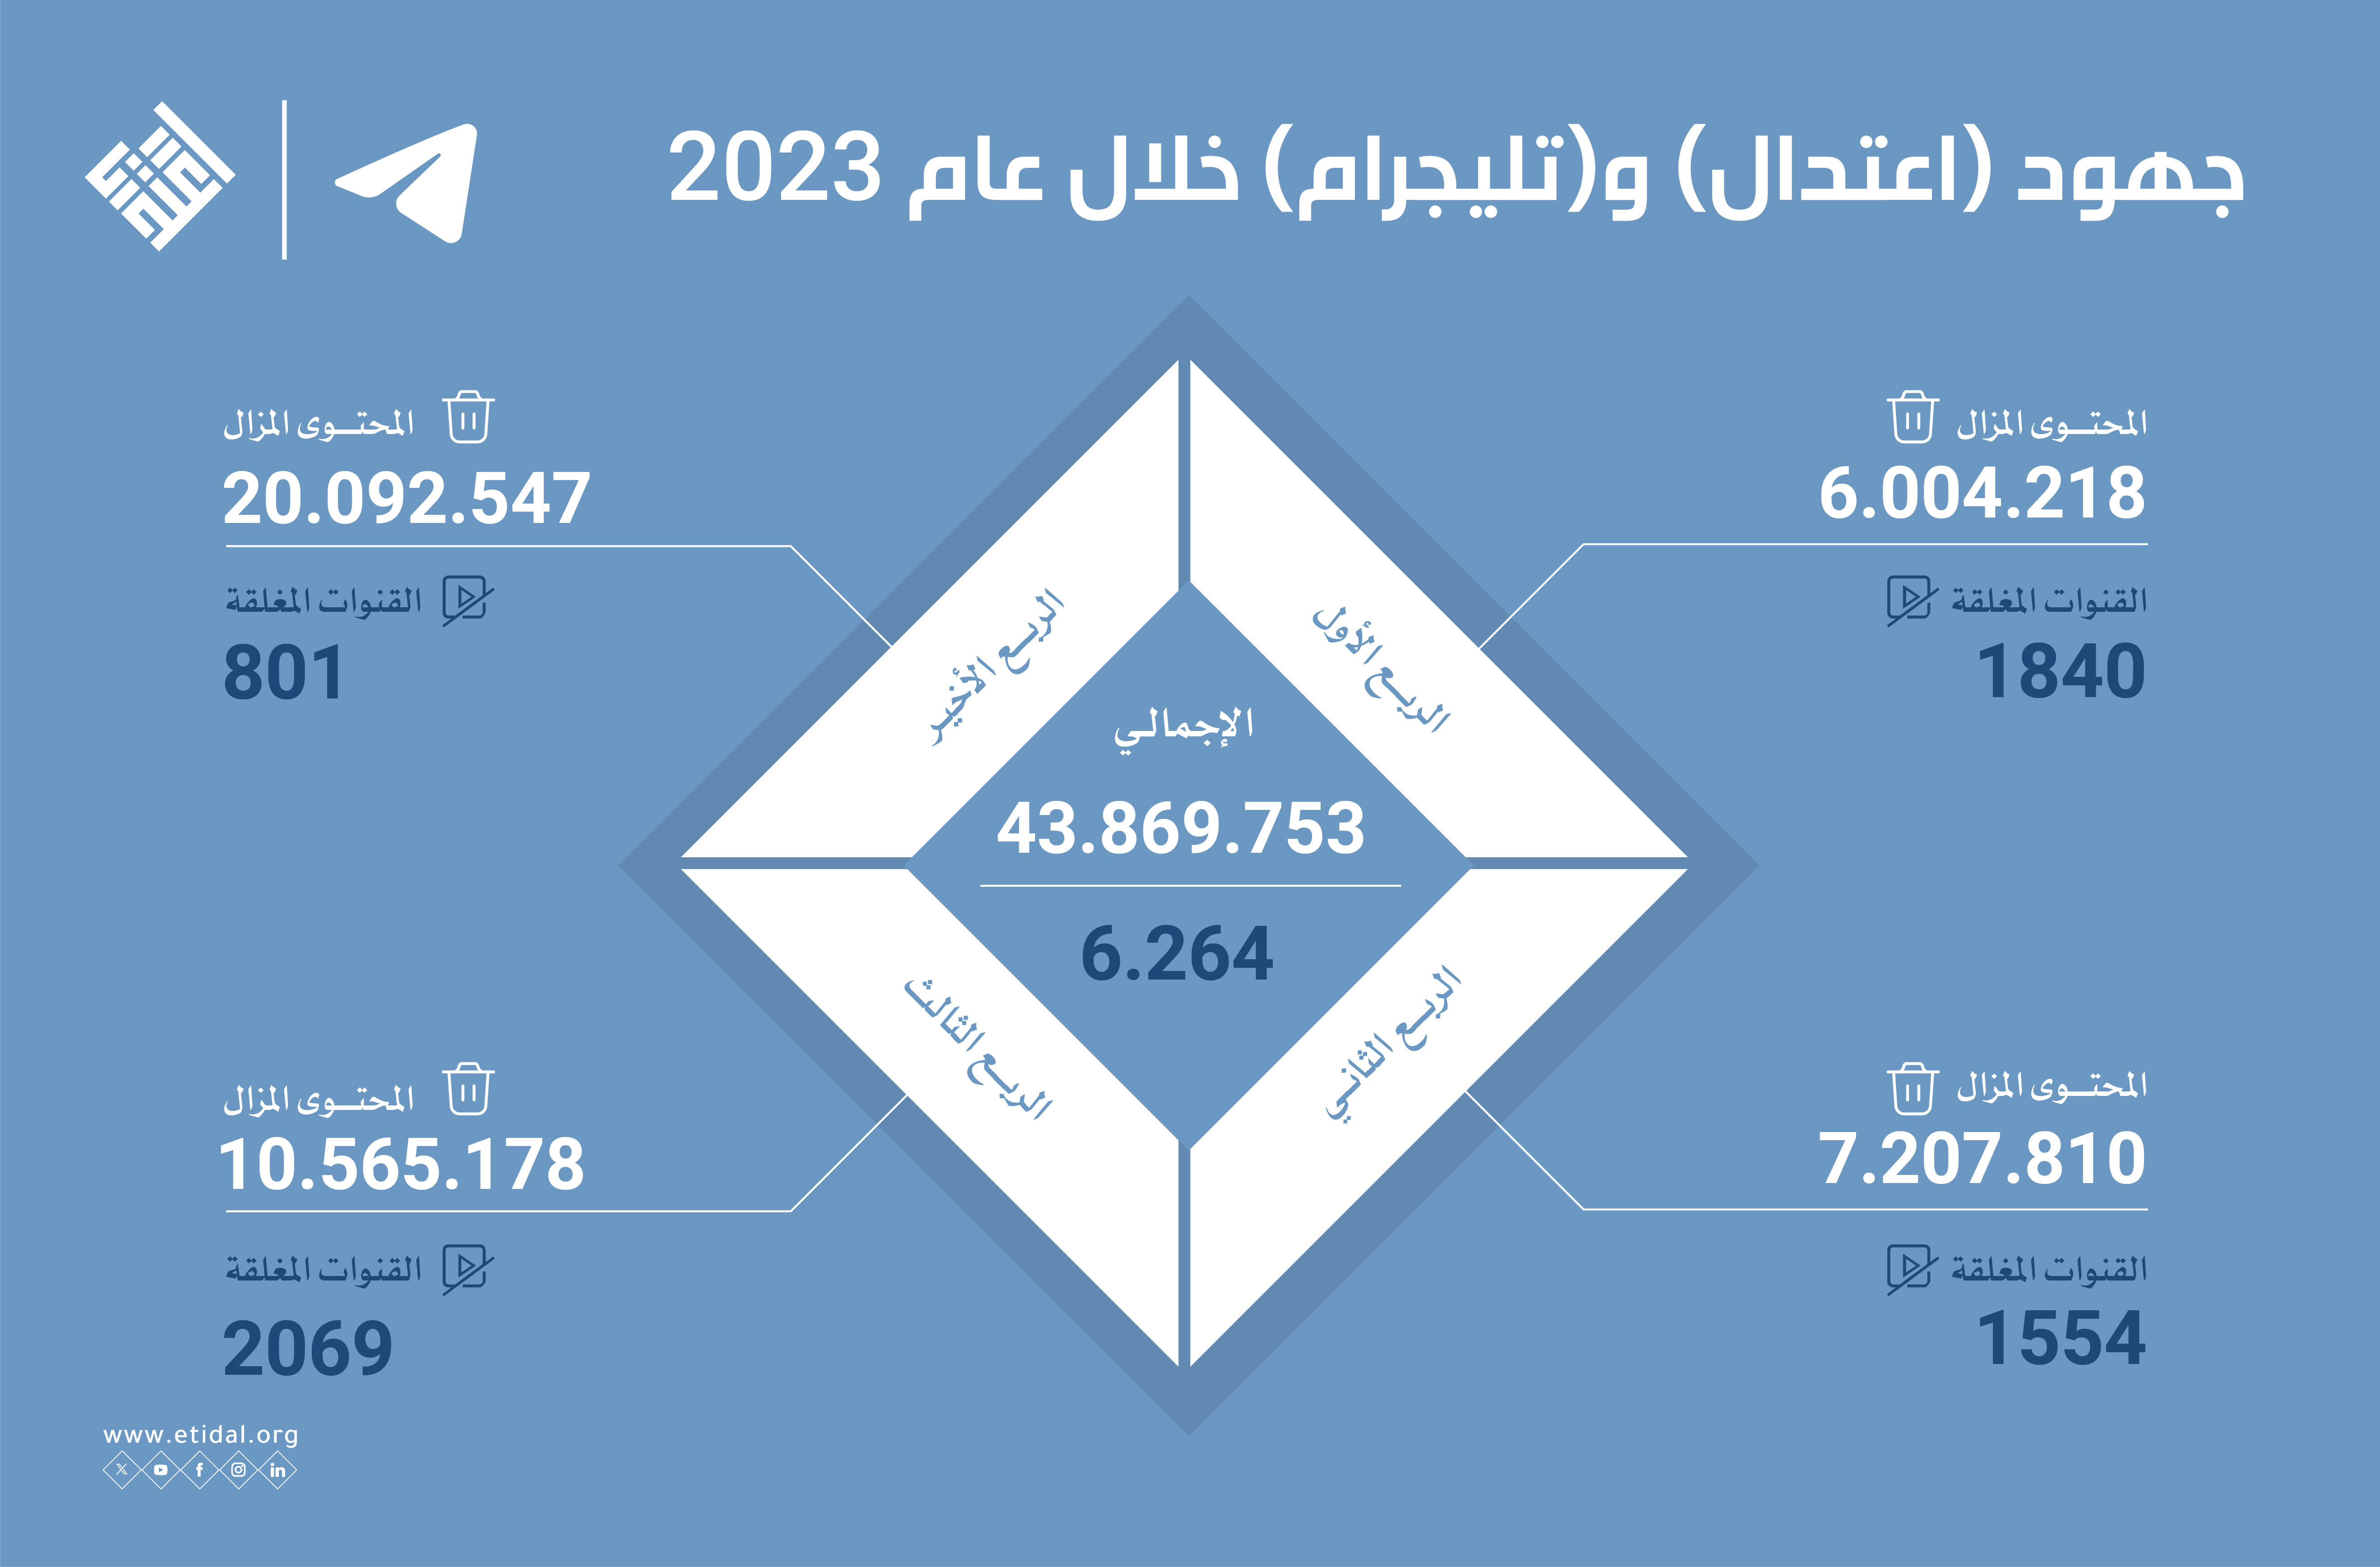 (اعتدال) و (تليجرام) خلال عام 2023 تتصدى لـ 3 تنظيمات إرهابية بإزالة 43 مليون محتوى متطرف